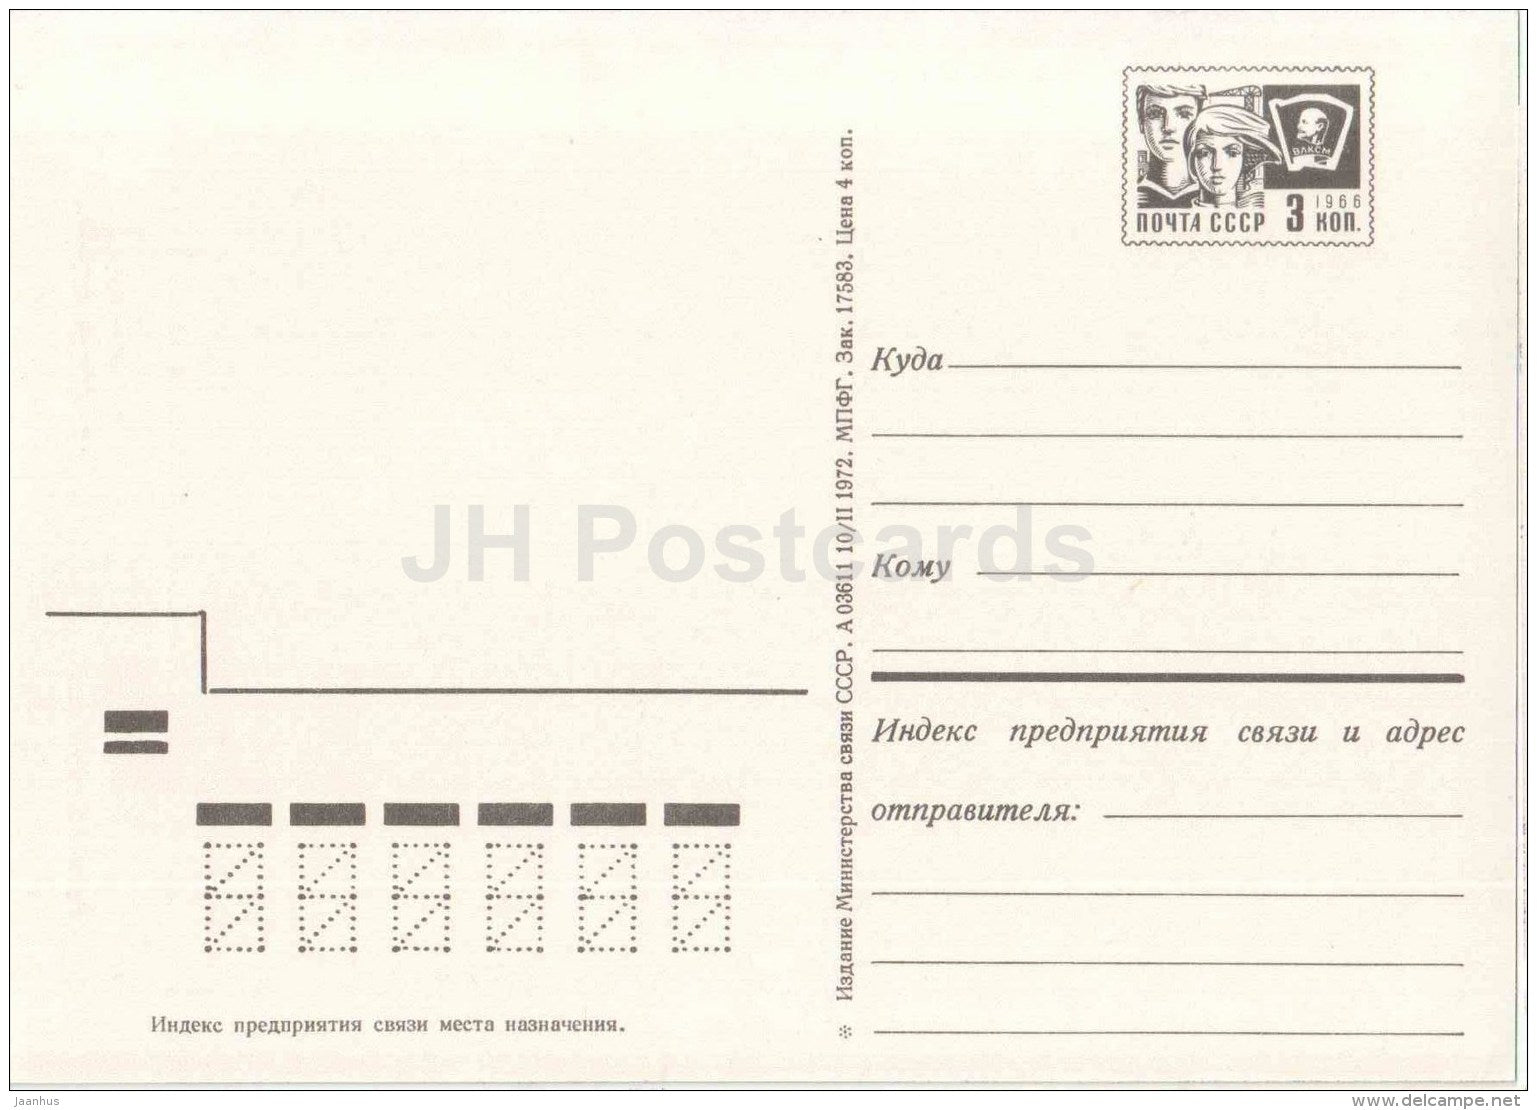 Mtatsminda Pantheon - Tbilisi - postal stationery - 1972 - Georgia USSR - unused - JH Postcards